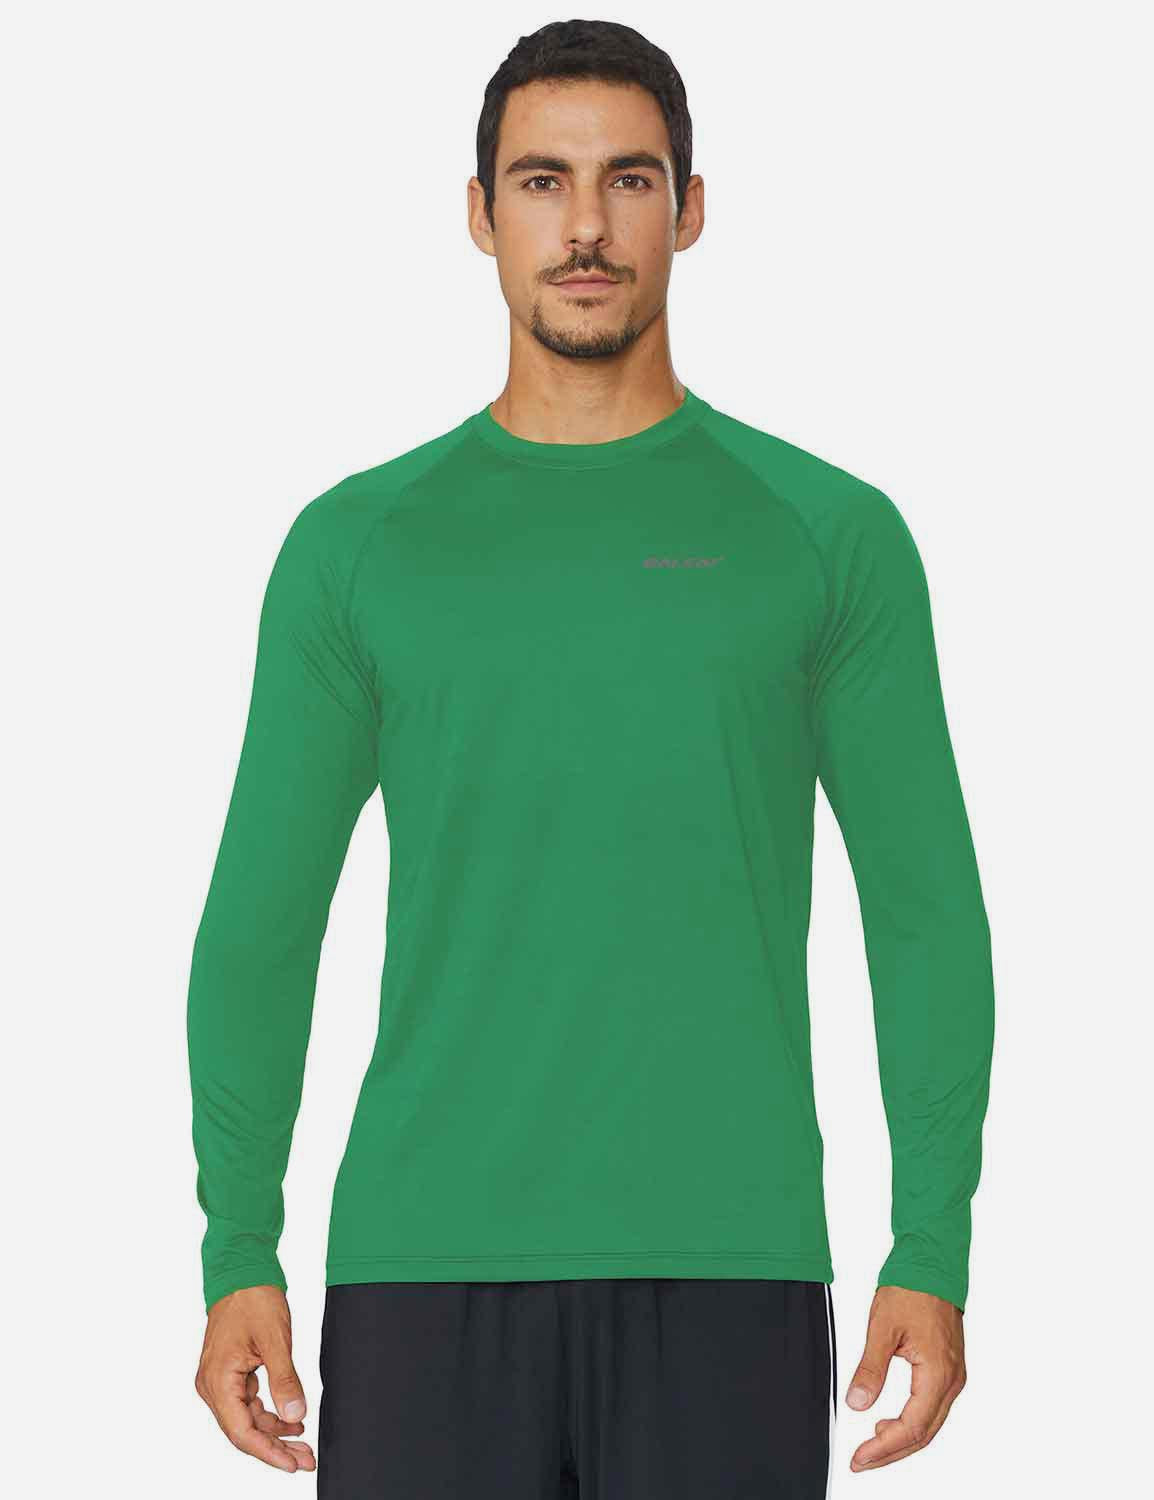 Baleaf Men's Workout Crew-Neck Slim-Cut Long Sleeved Shirt abd195 Forest Green Front